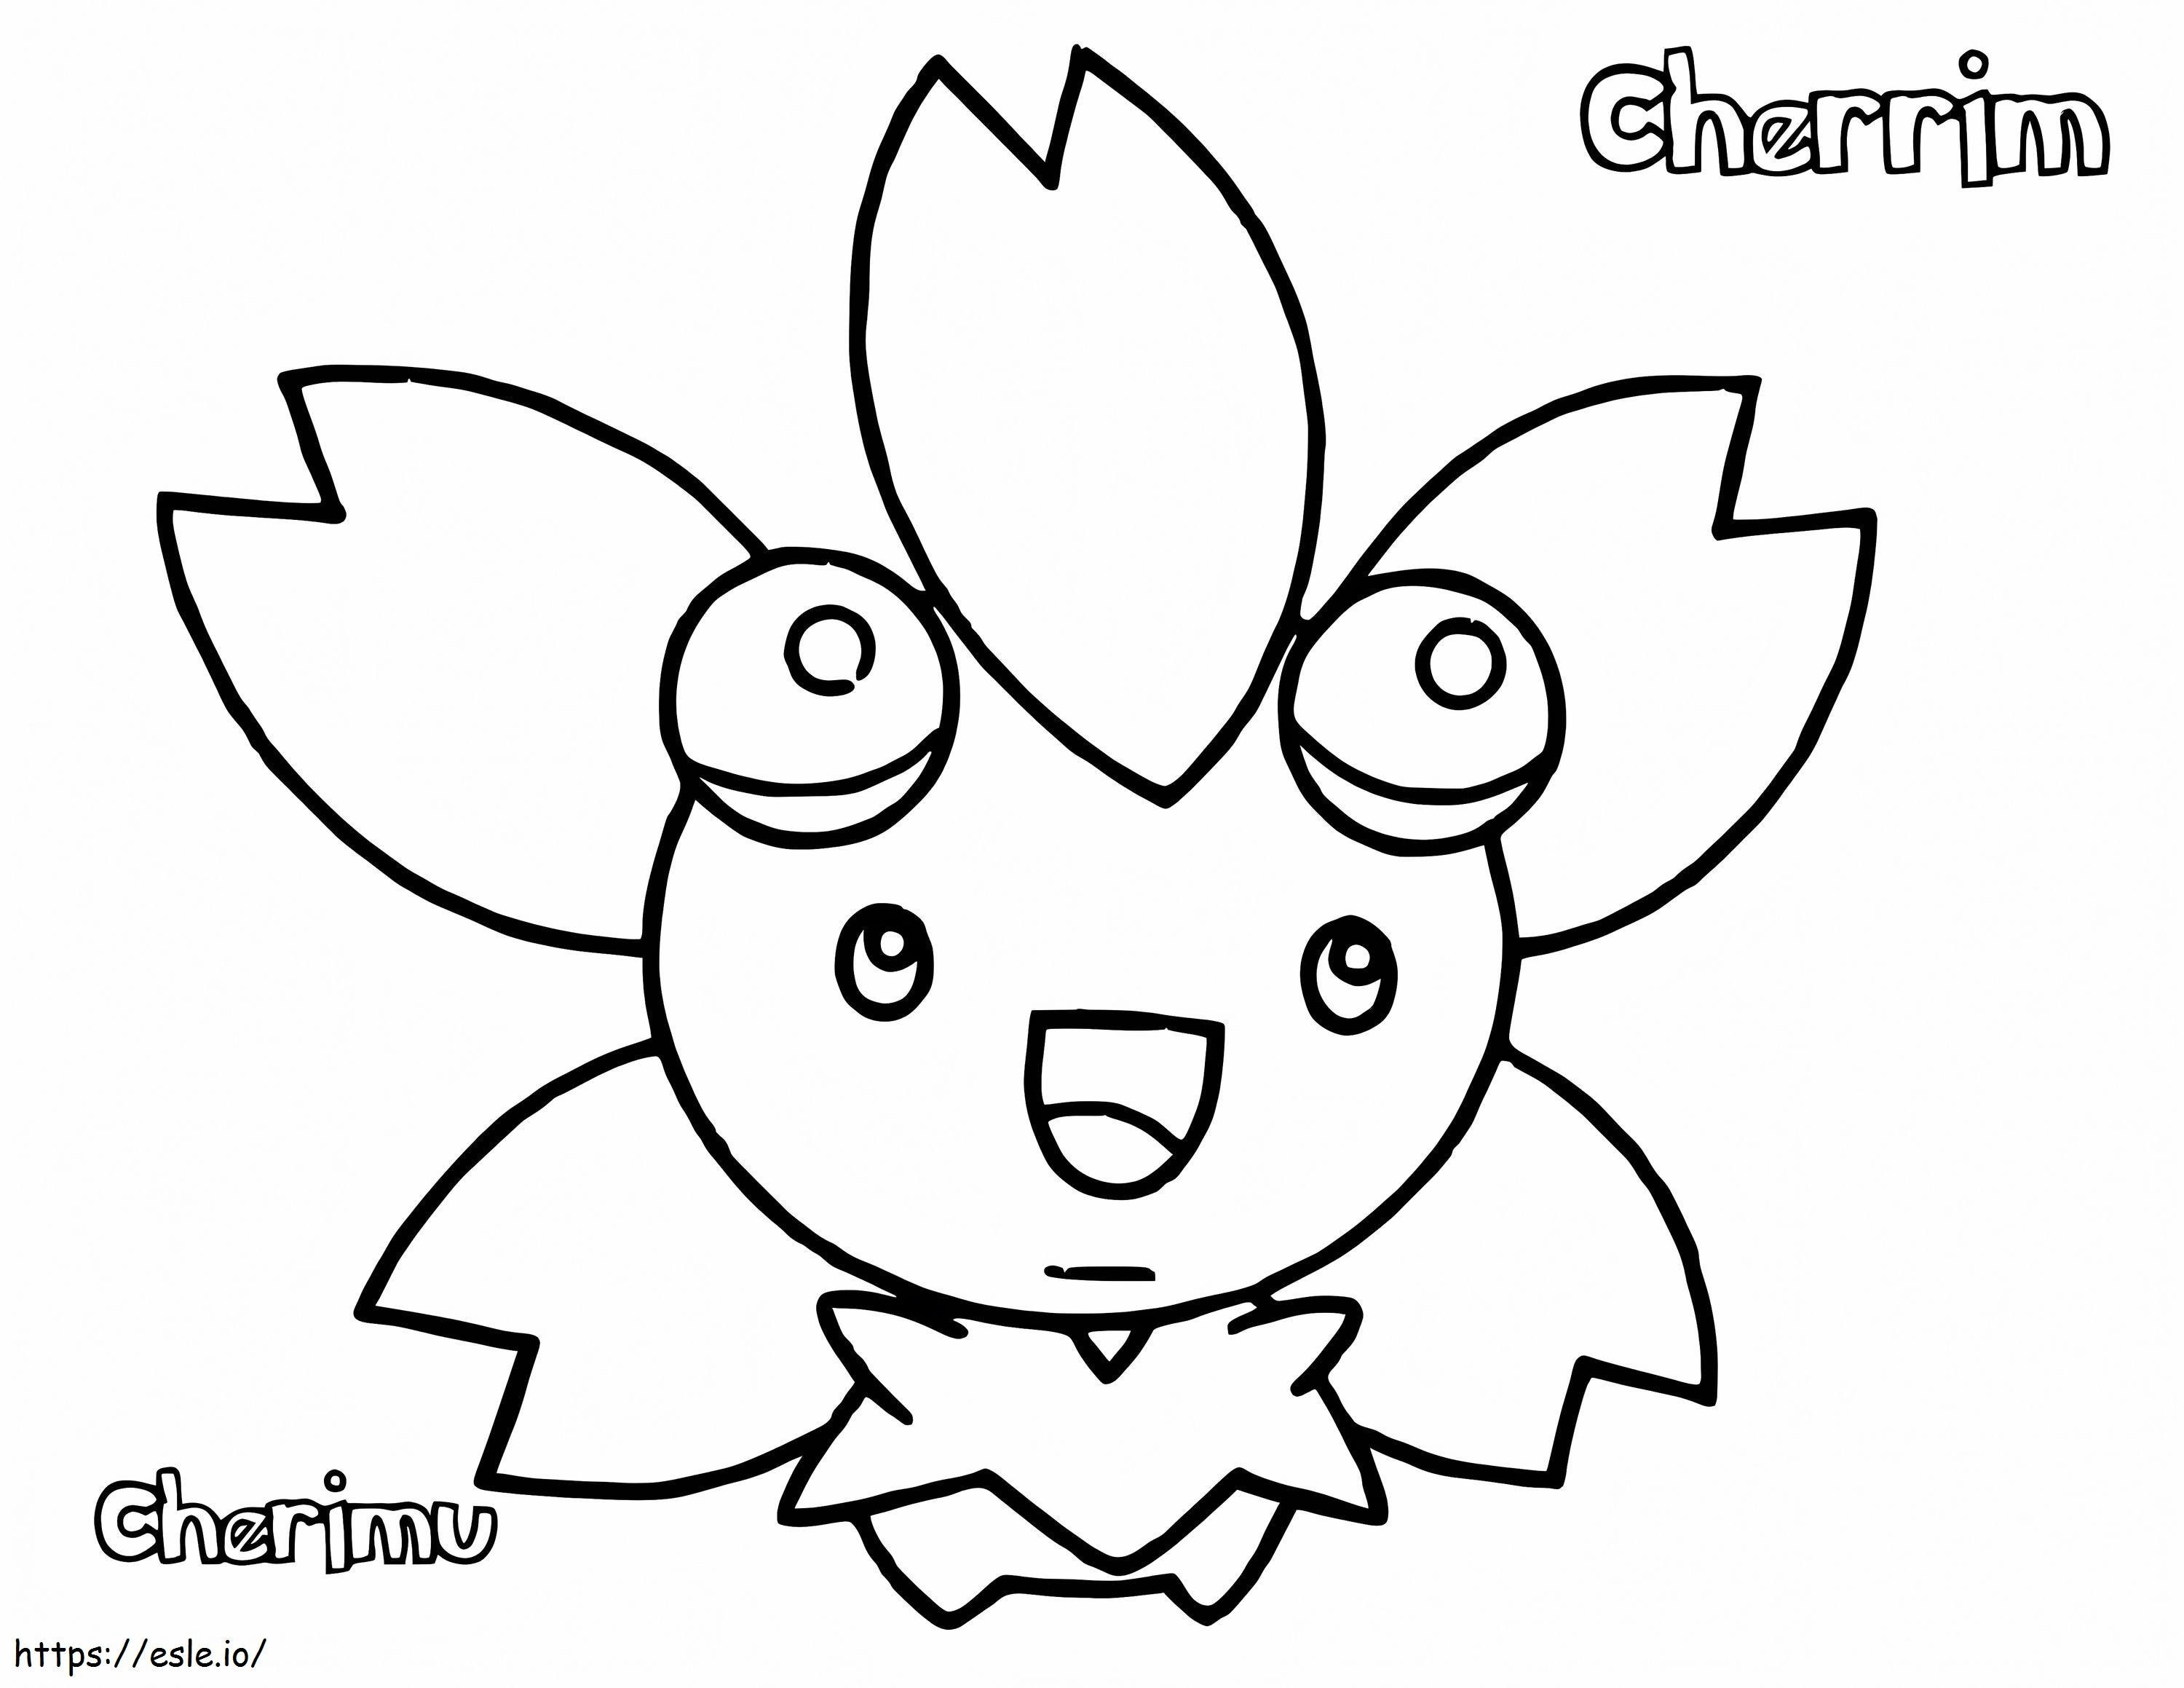 Coloriage Cherrim Pokémon 2 à imprimer dessin